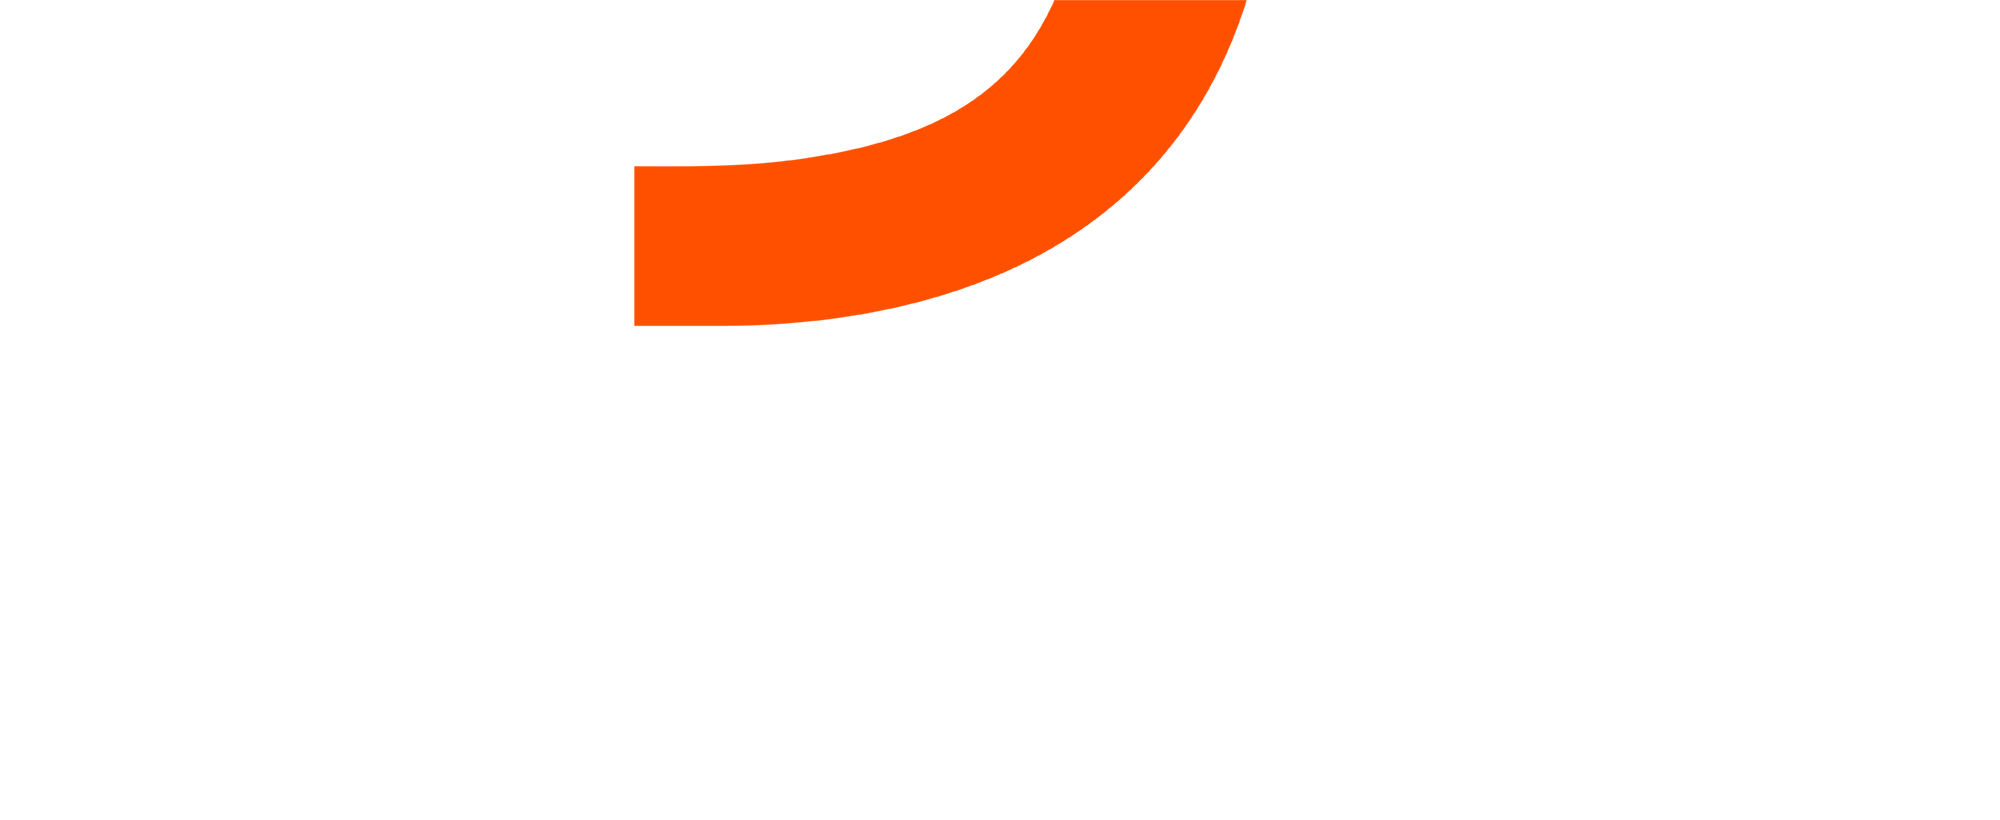 SIXT logo